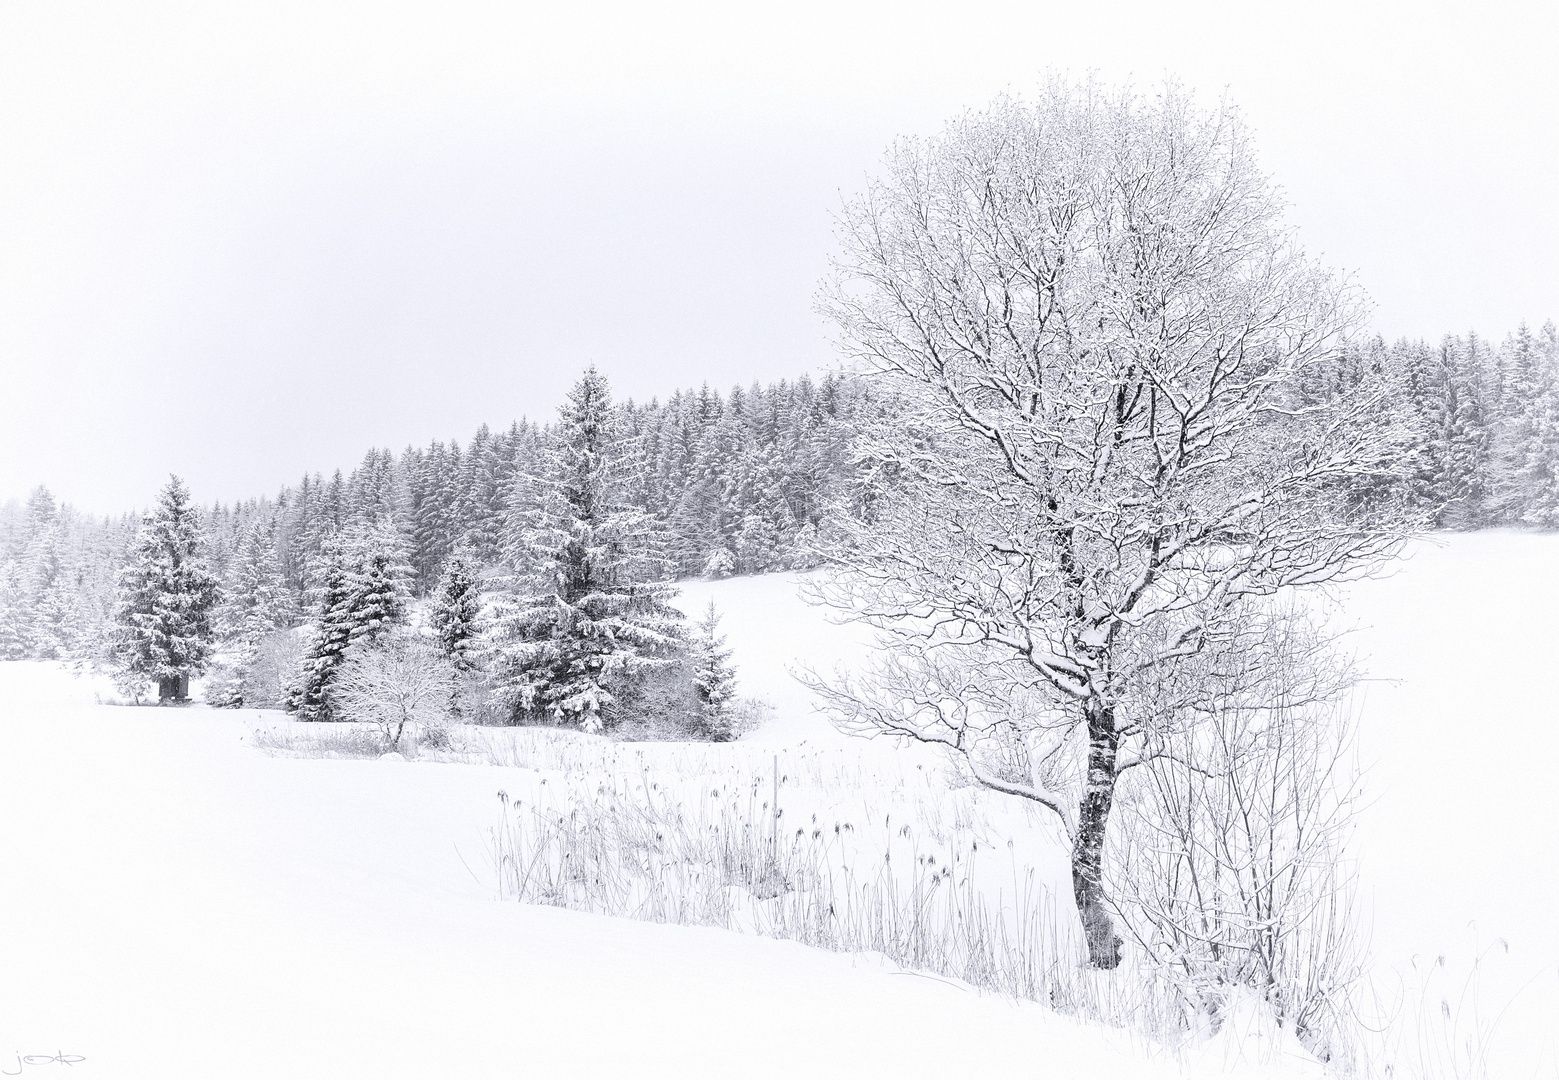  Schöne Weiße Hintergrundbild 1559x1080. weiße Ästhetik Foto & Bild. europe, Österreich, pflanzen, pilze & flechten Bilder auf fotocommunity